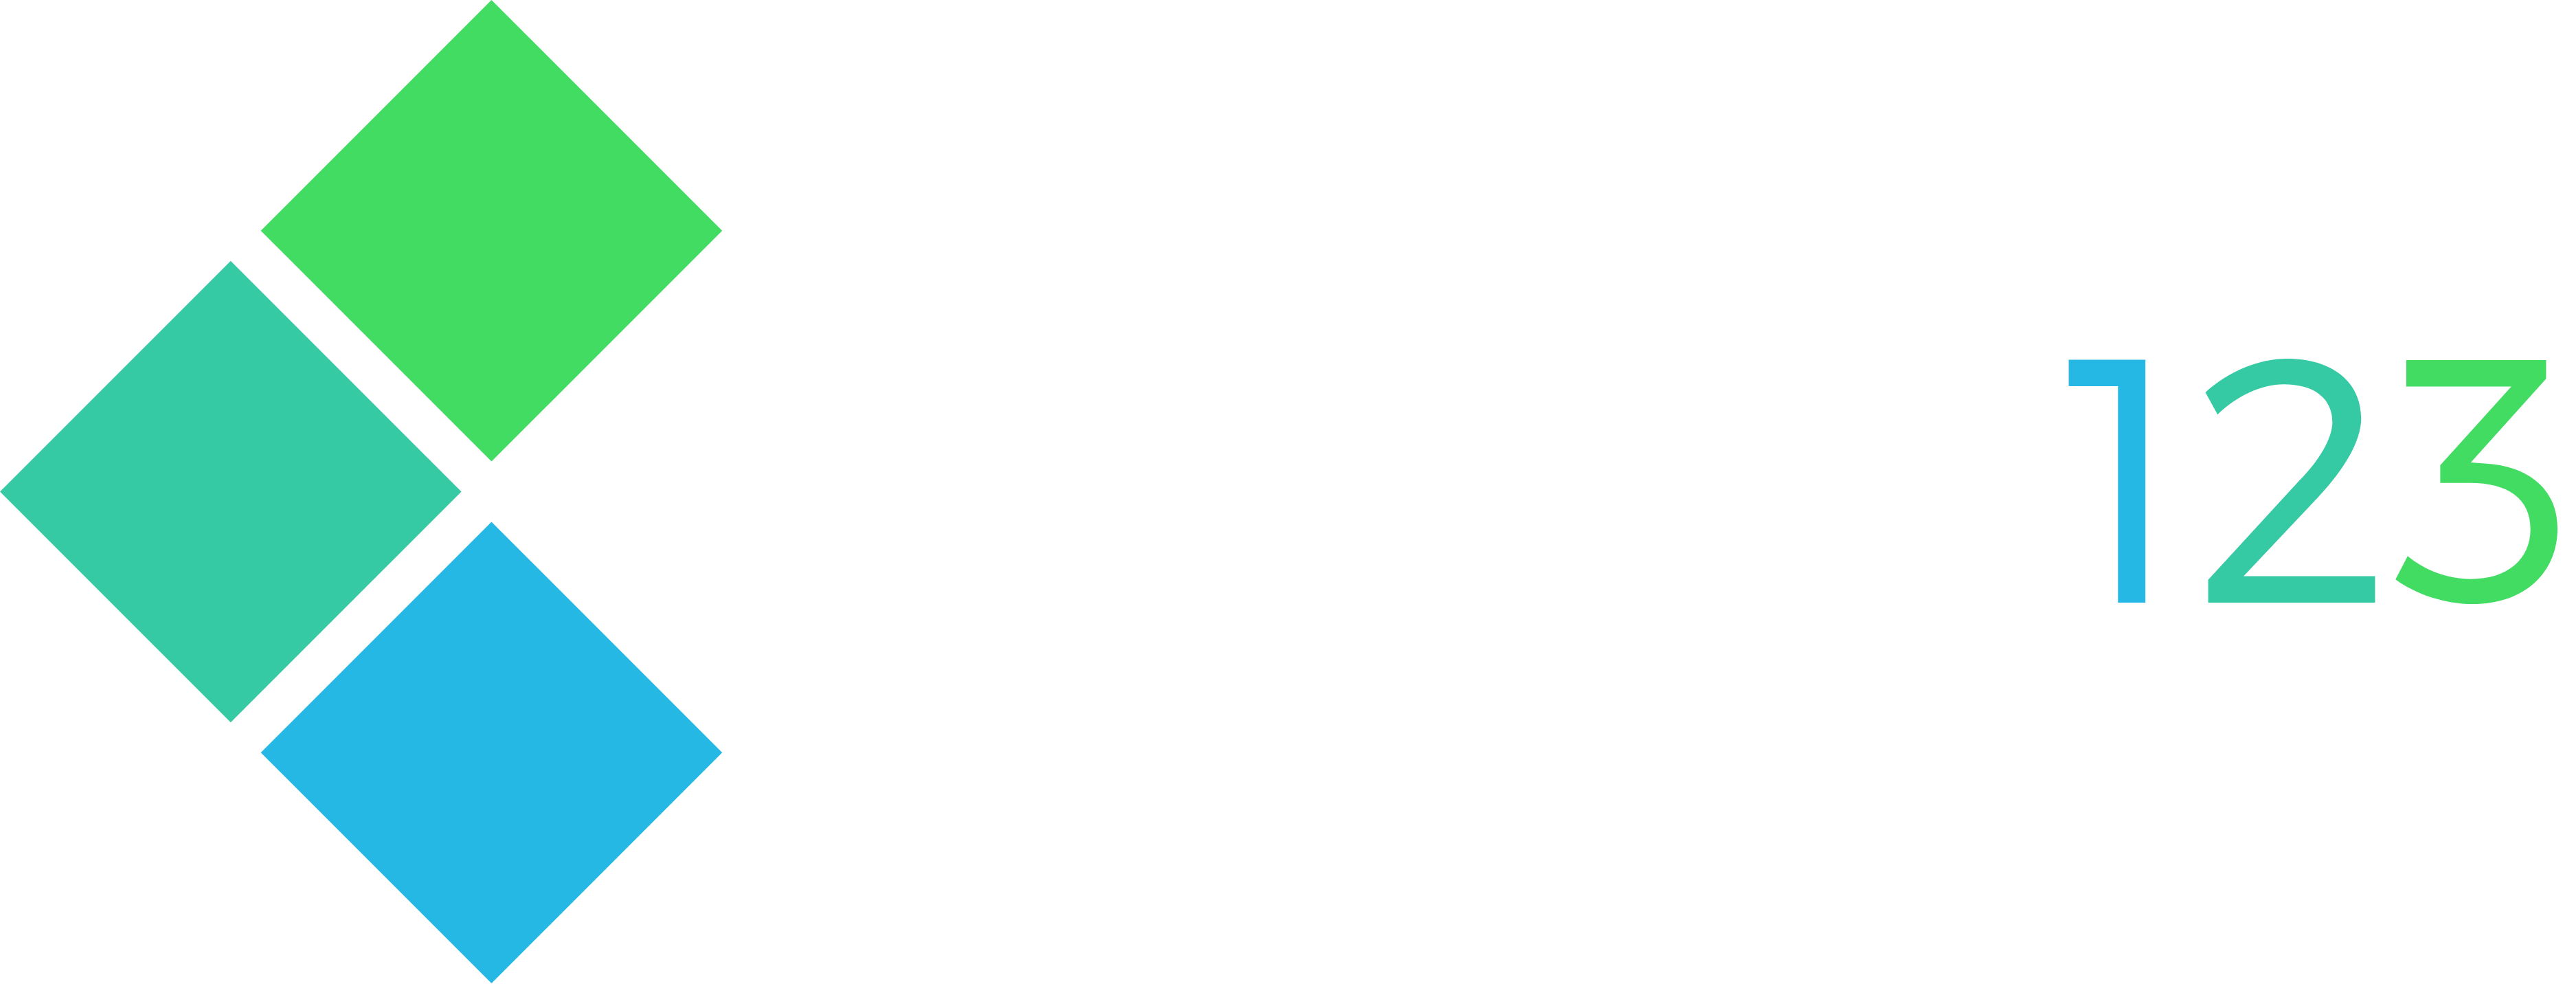 STRONY123 – Strony Internetowe Londyn – Pozycjonowanie Stron Londyn